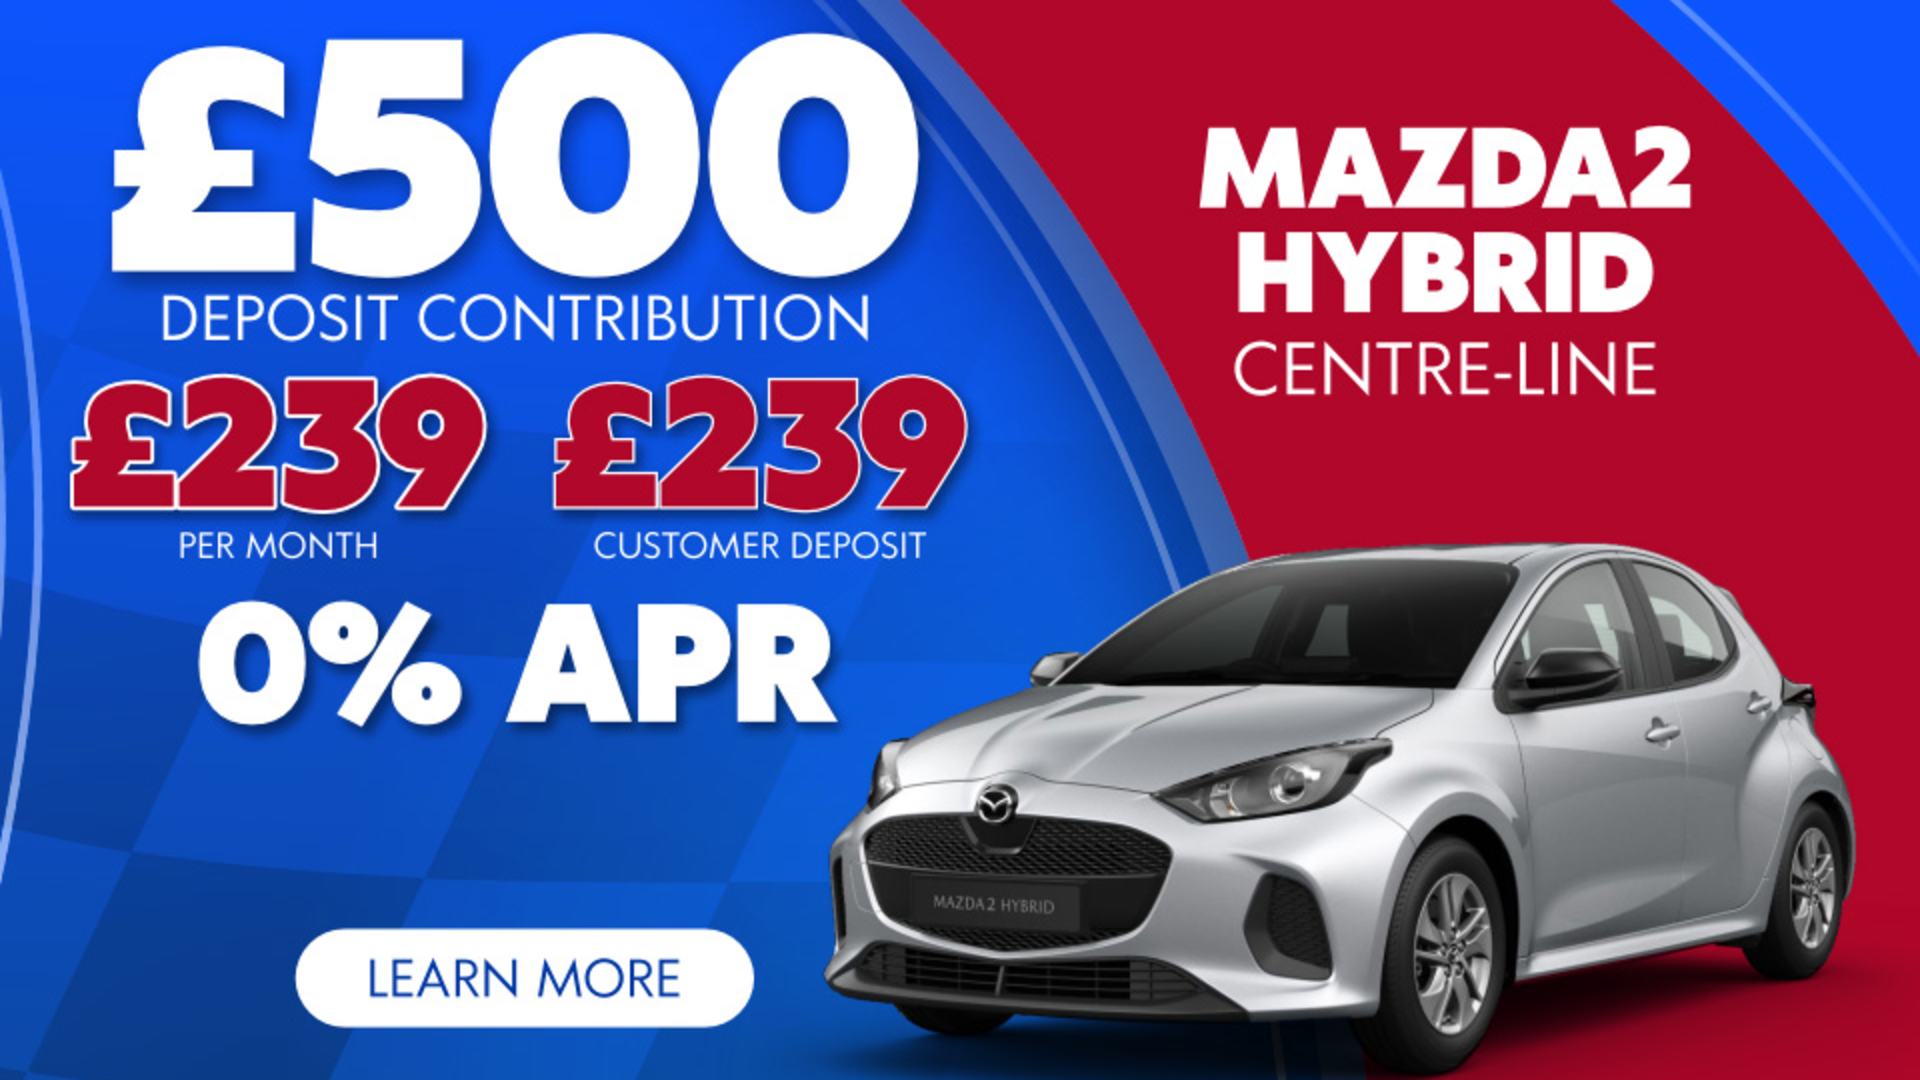 Mazda2 Hybrid Offer